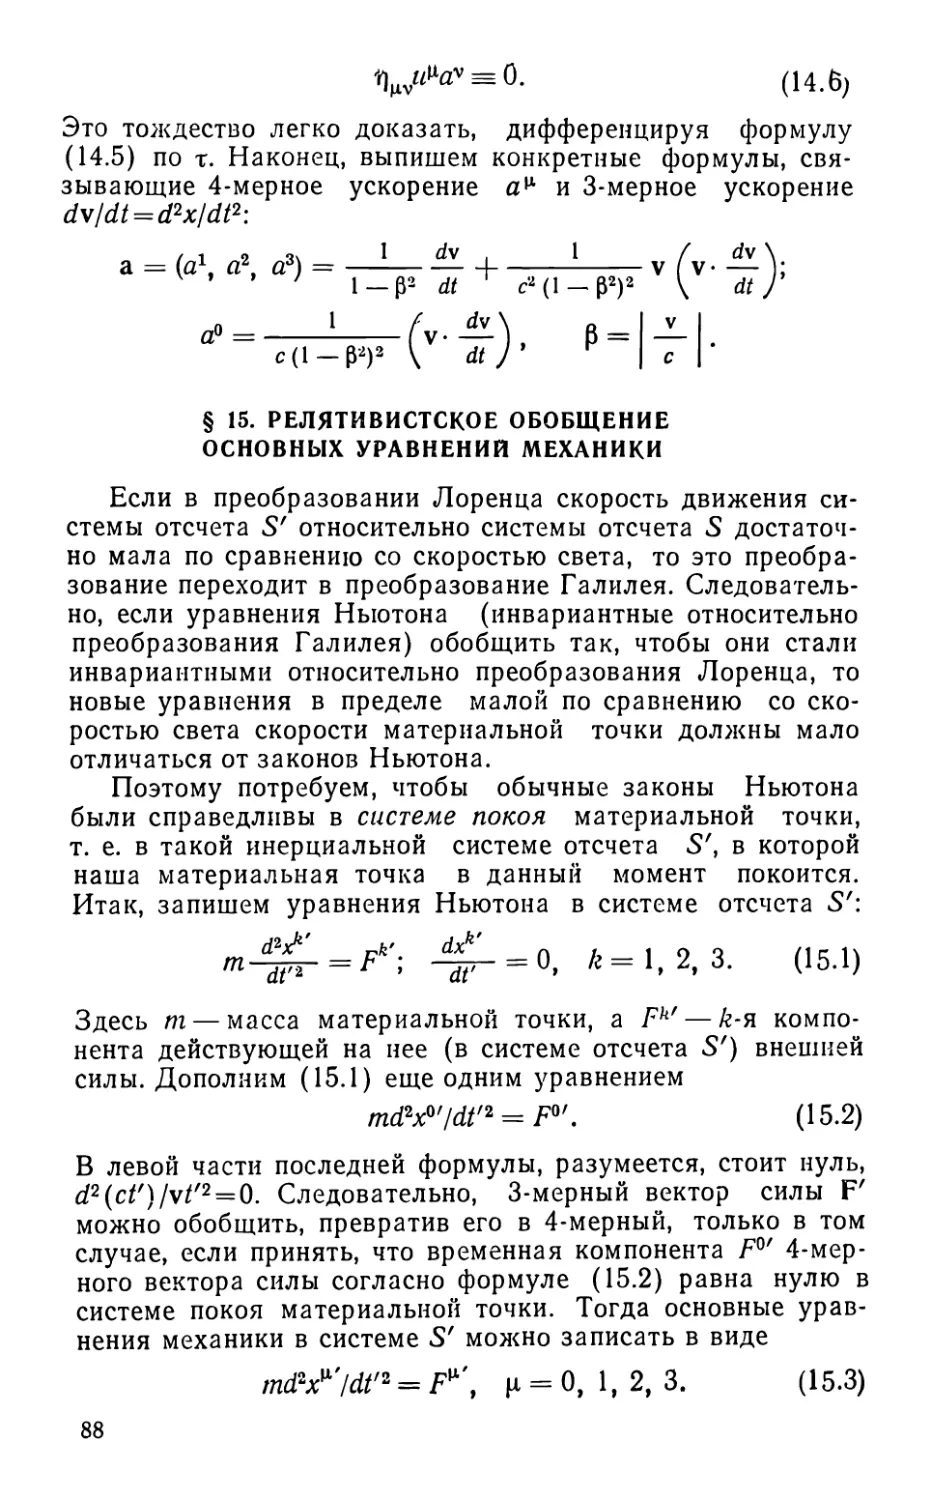 § 15. Релятивистское обобщение основных уравнений механики